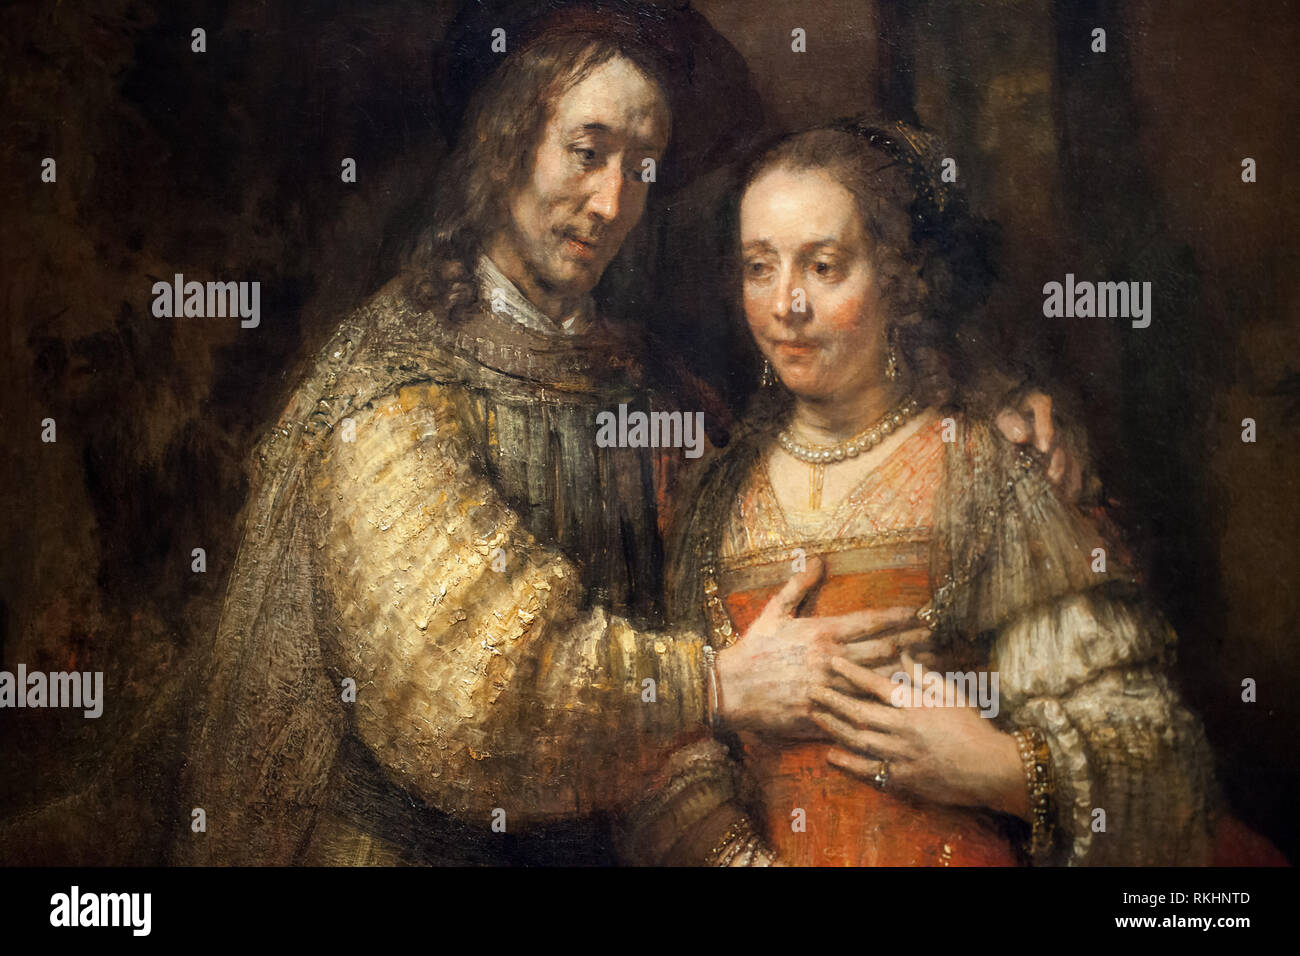 Detalle de Rembrandt van Rijn retrato de Isaac y Rebecca desde el Antiguo Testamento (La novia judía), circa 1665-1669 - exposición de Rembrandt tardía Foto de stock